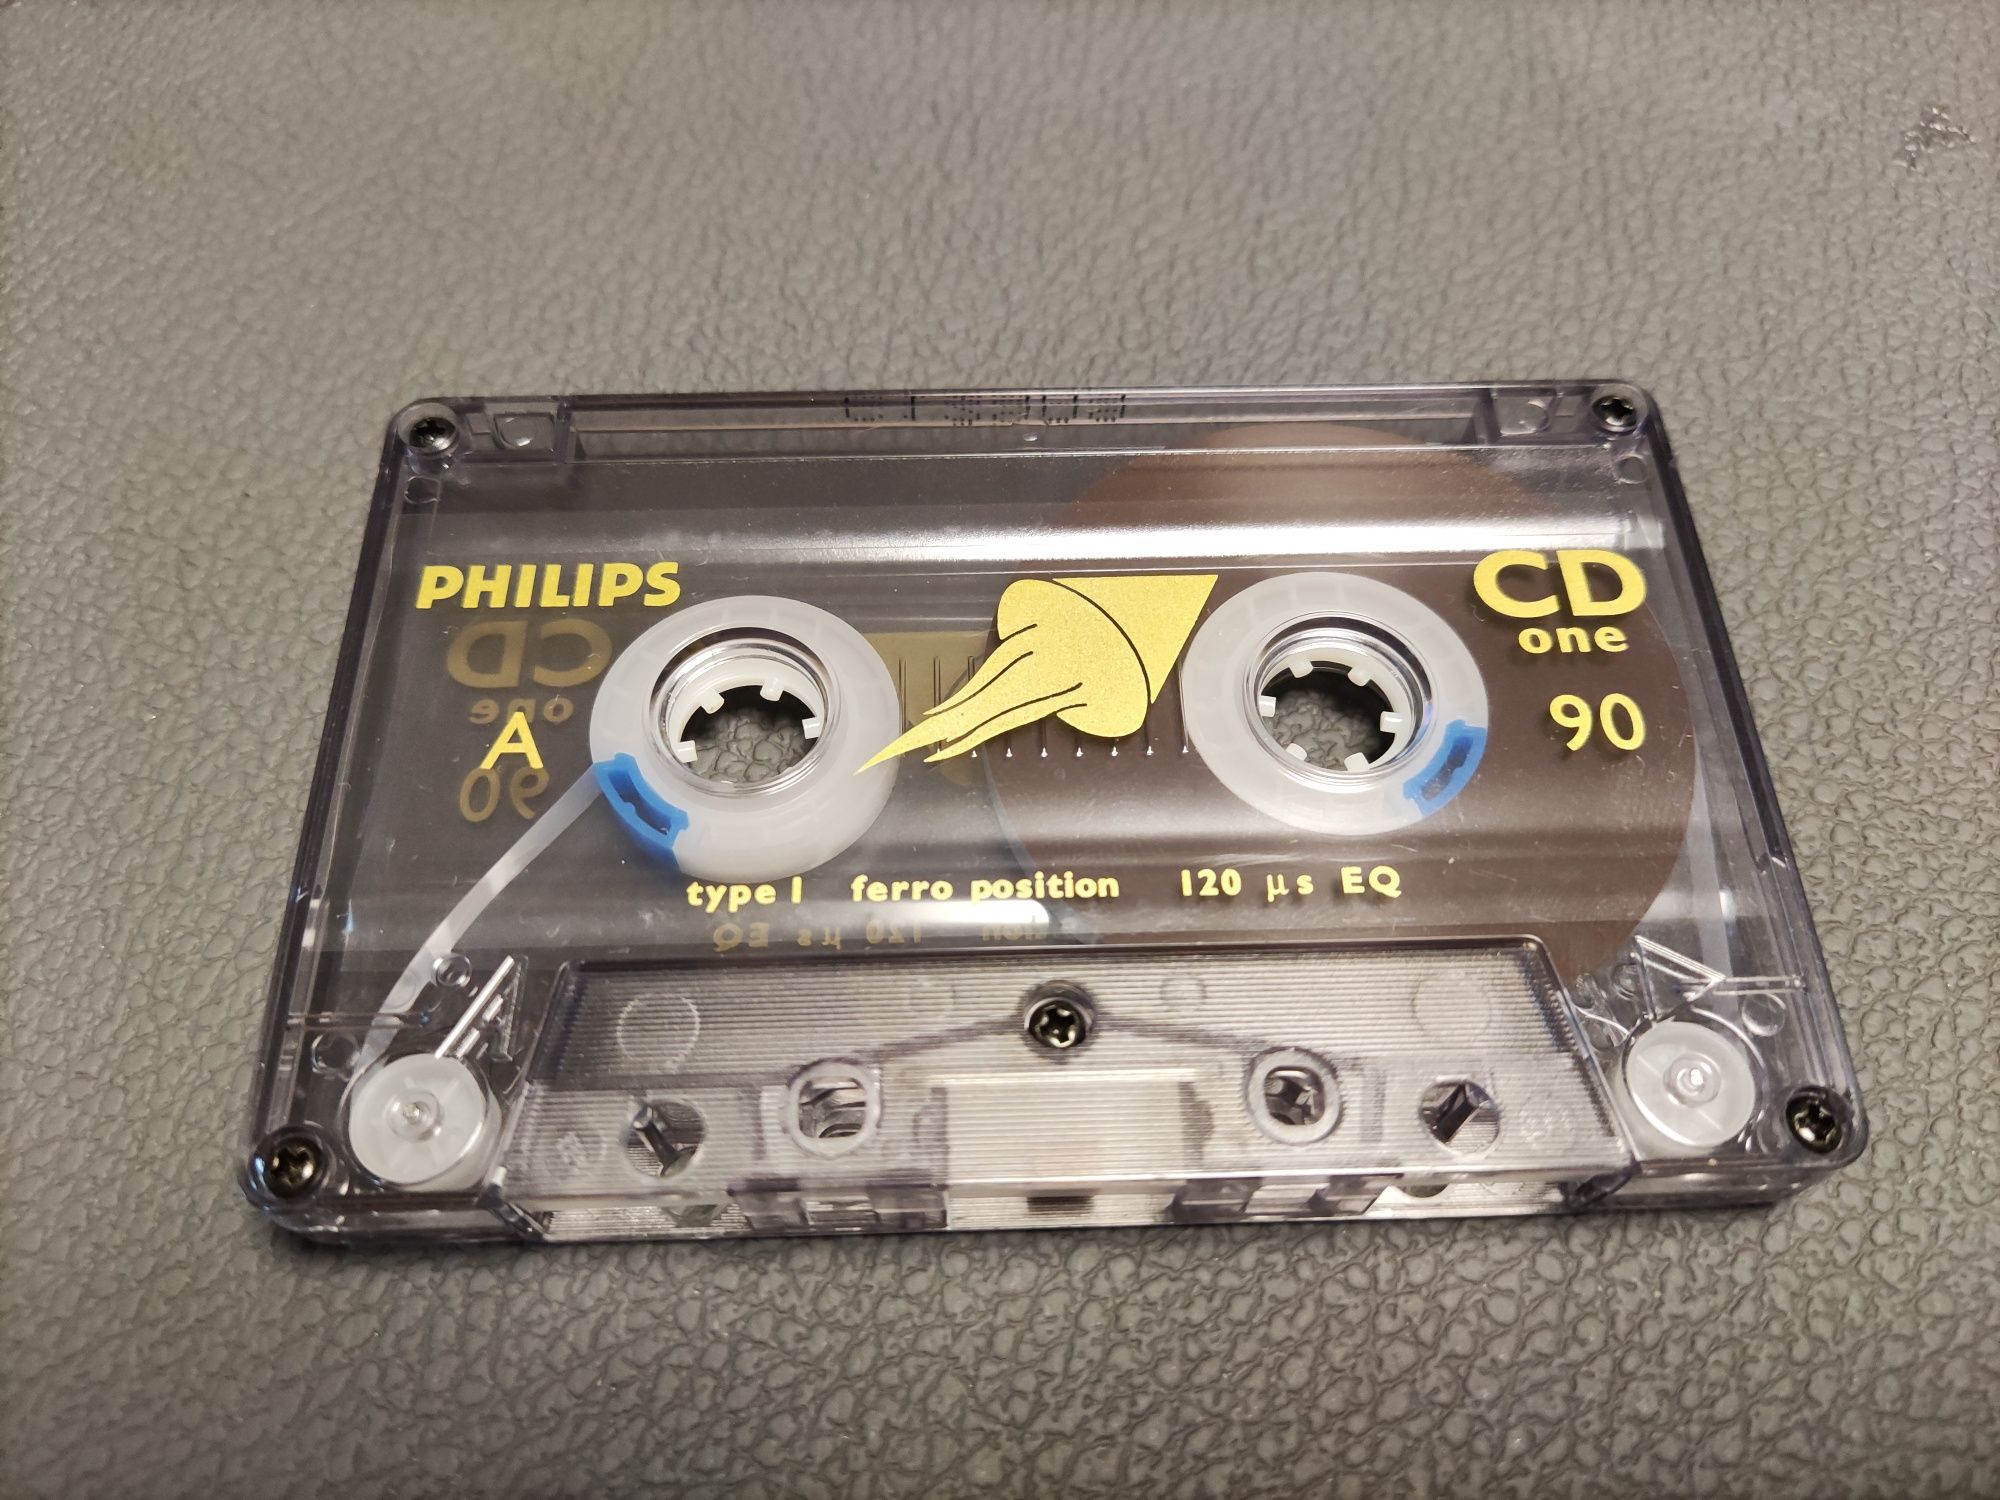 kaseta philips cd one 90